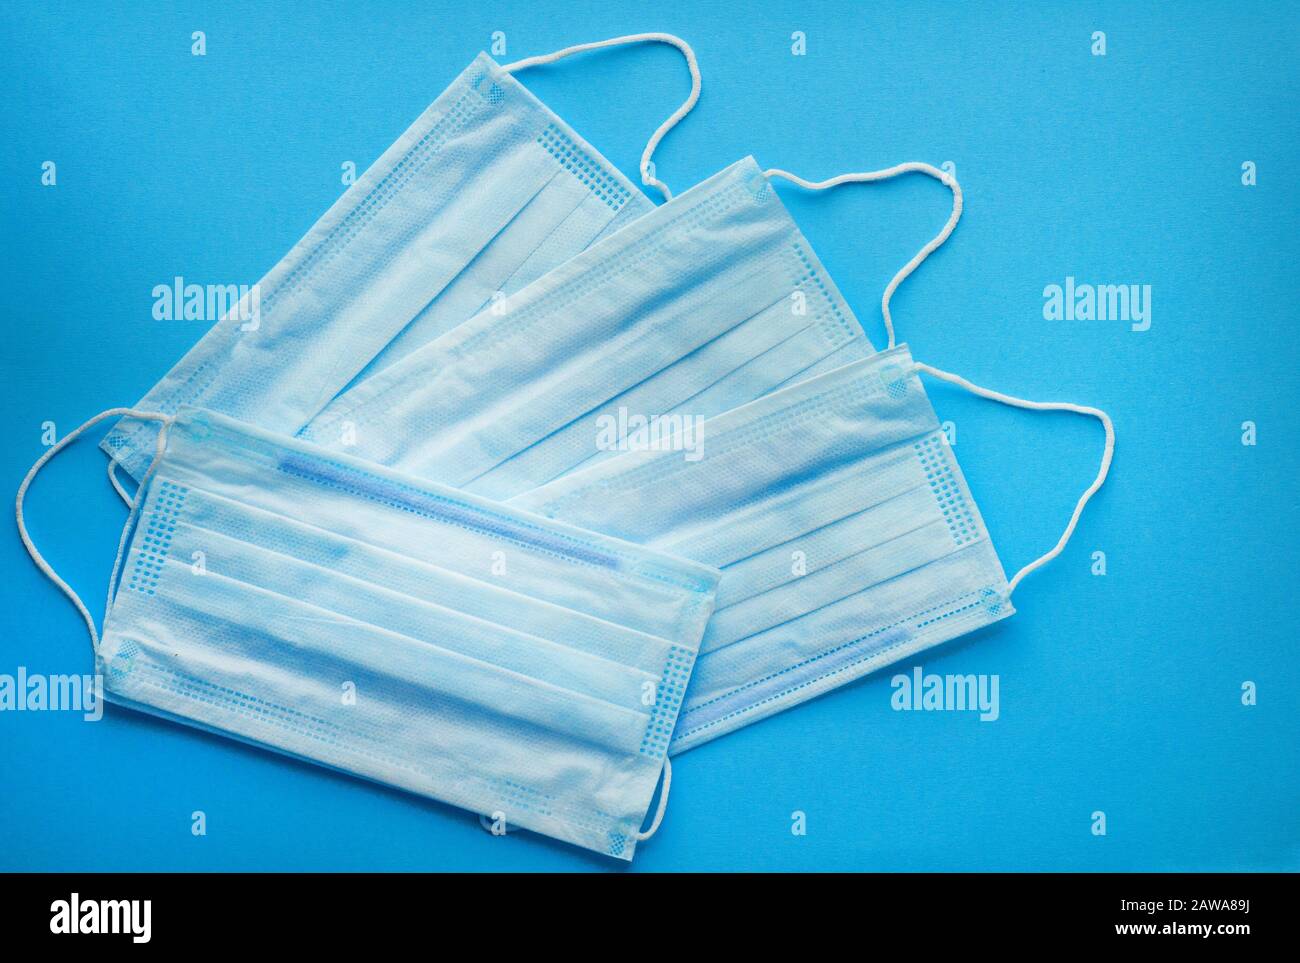 Chirurgische Schutzmasken auf blauem Hintergrund. Blaue medizinische Masken zum Schutz vor Grippe, Coronavirus und anderen Viren. Stockfoto